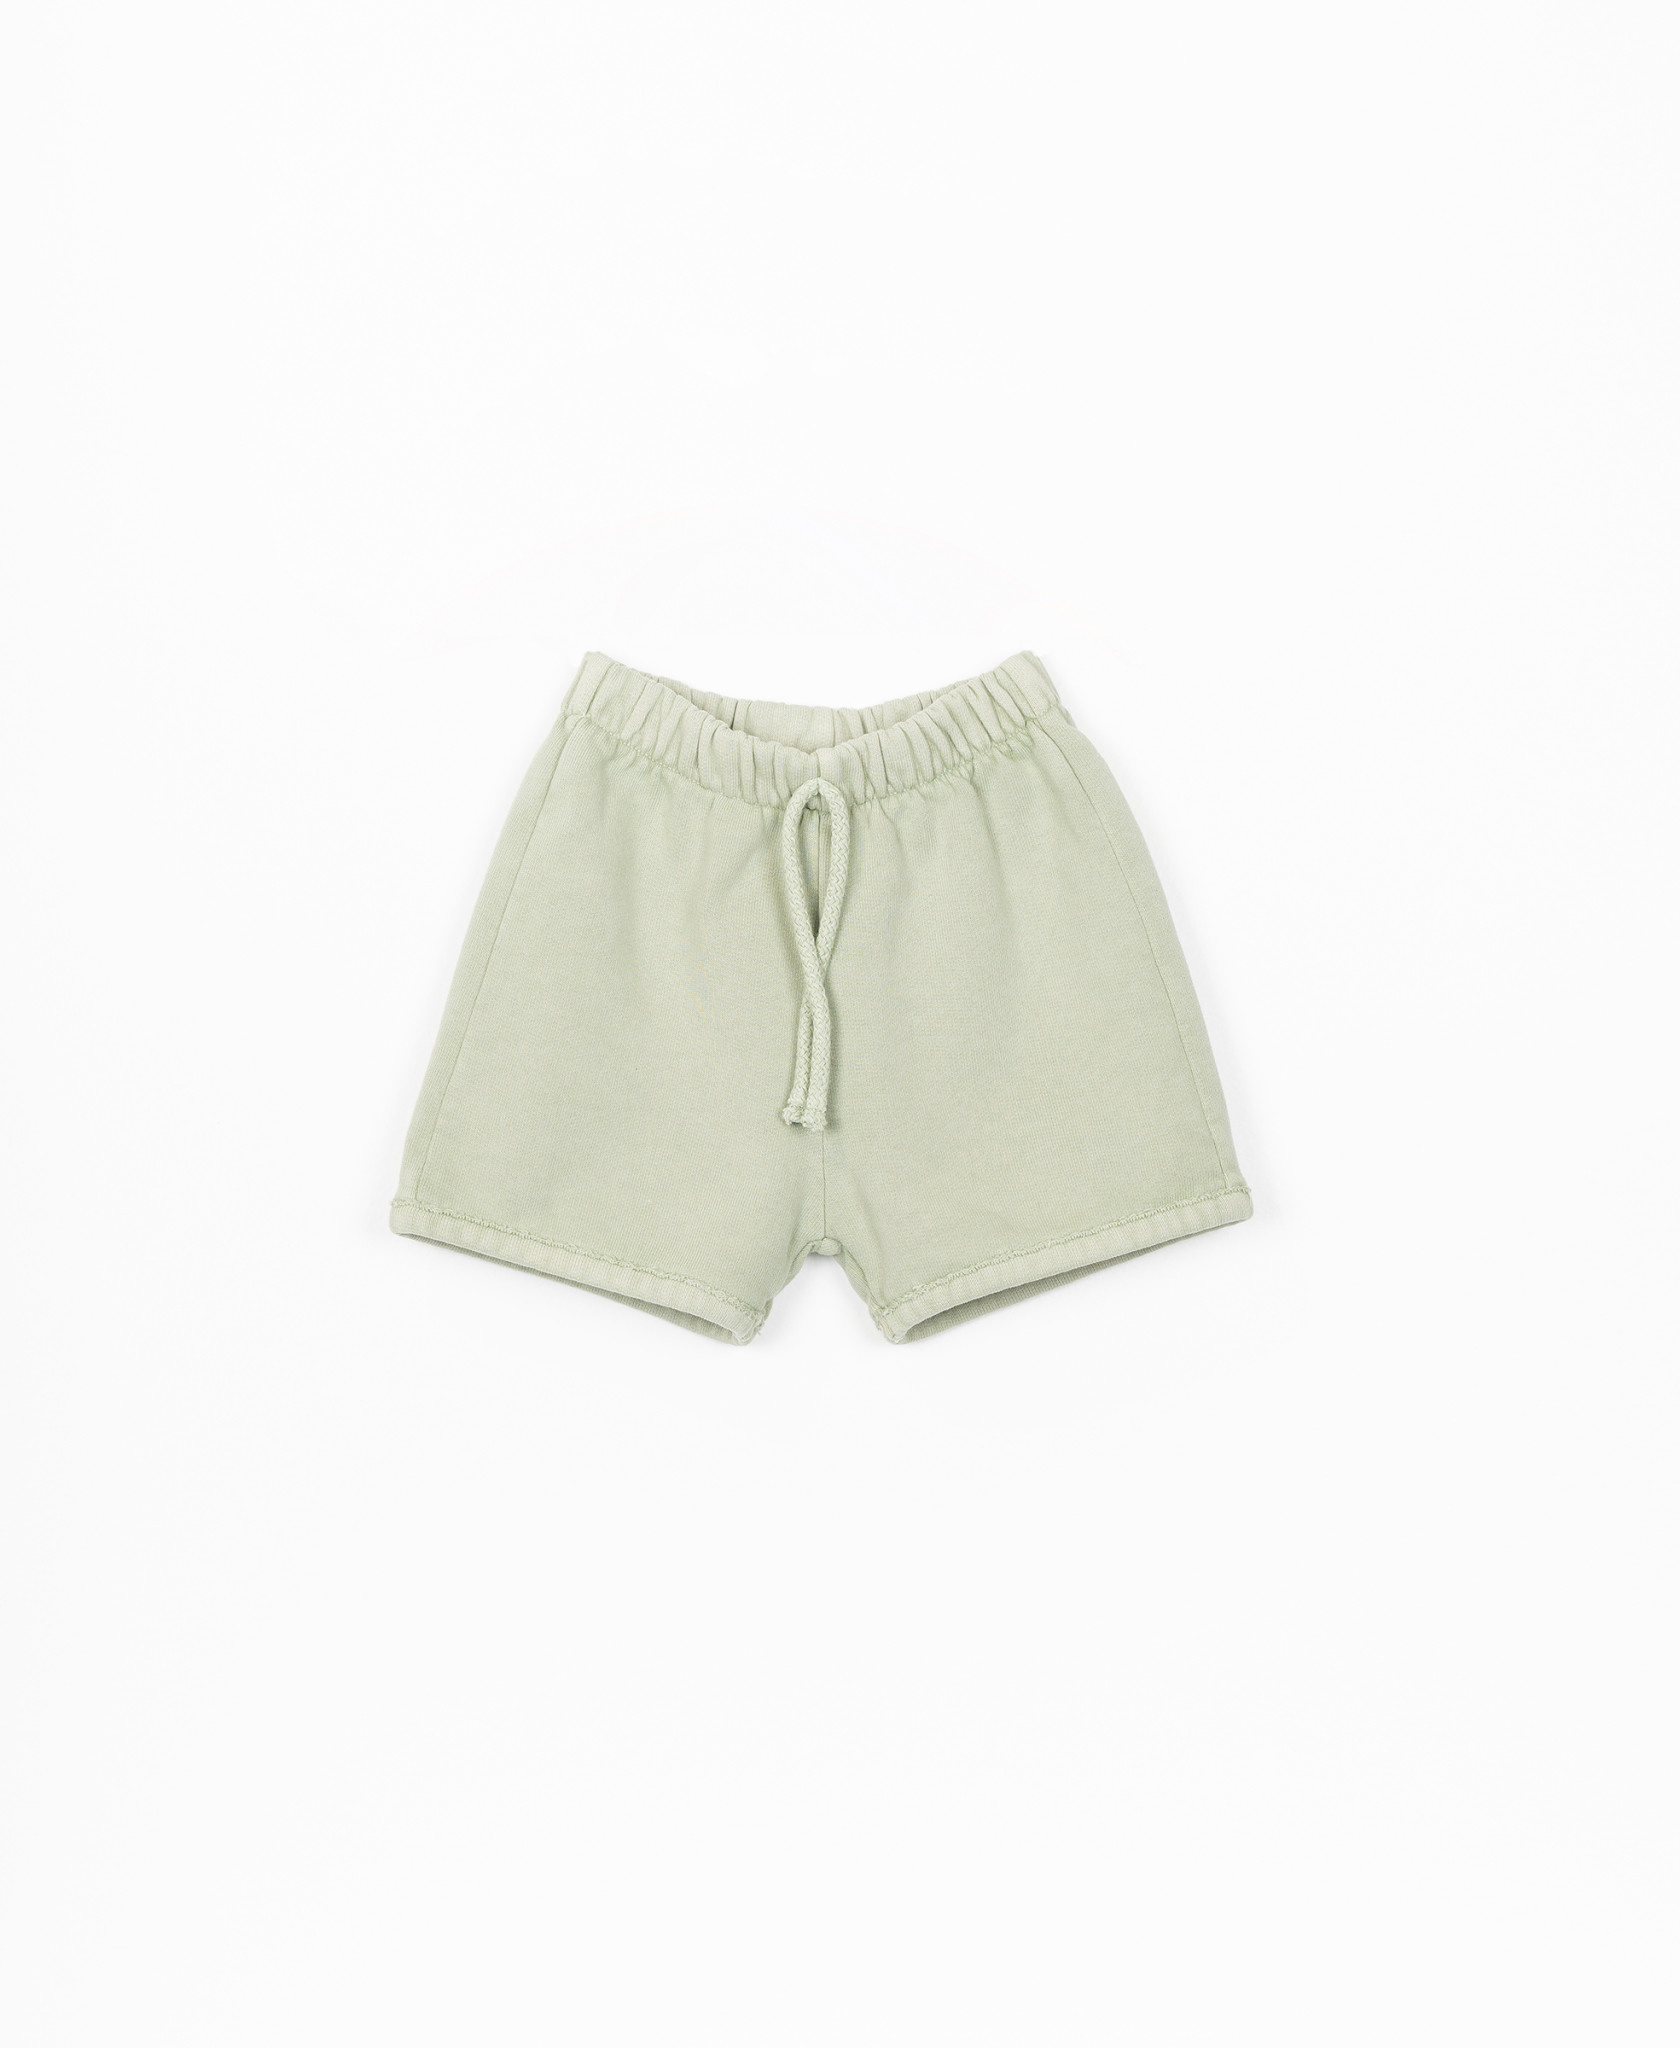 Play up - Fleece shorts origin P7160 1AK10908 - 6 month-1